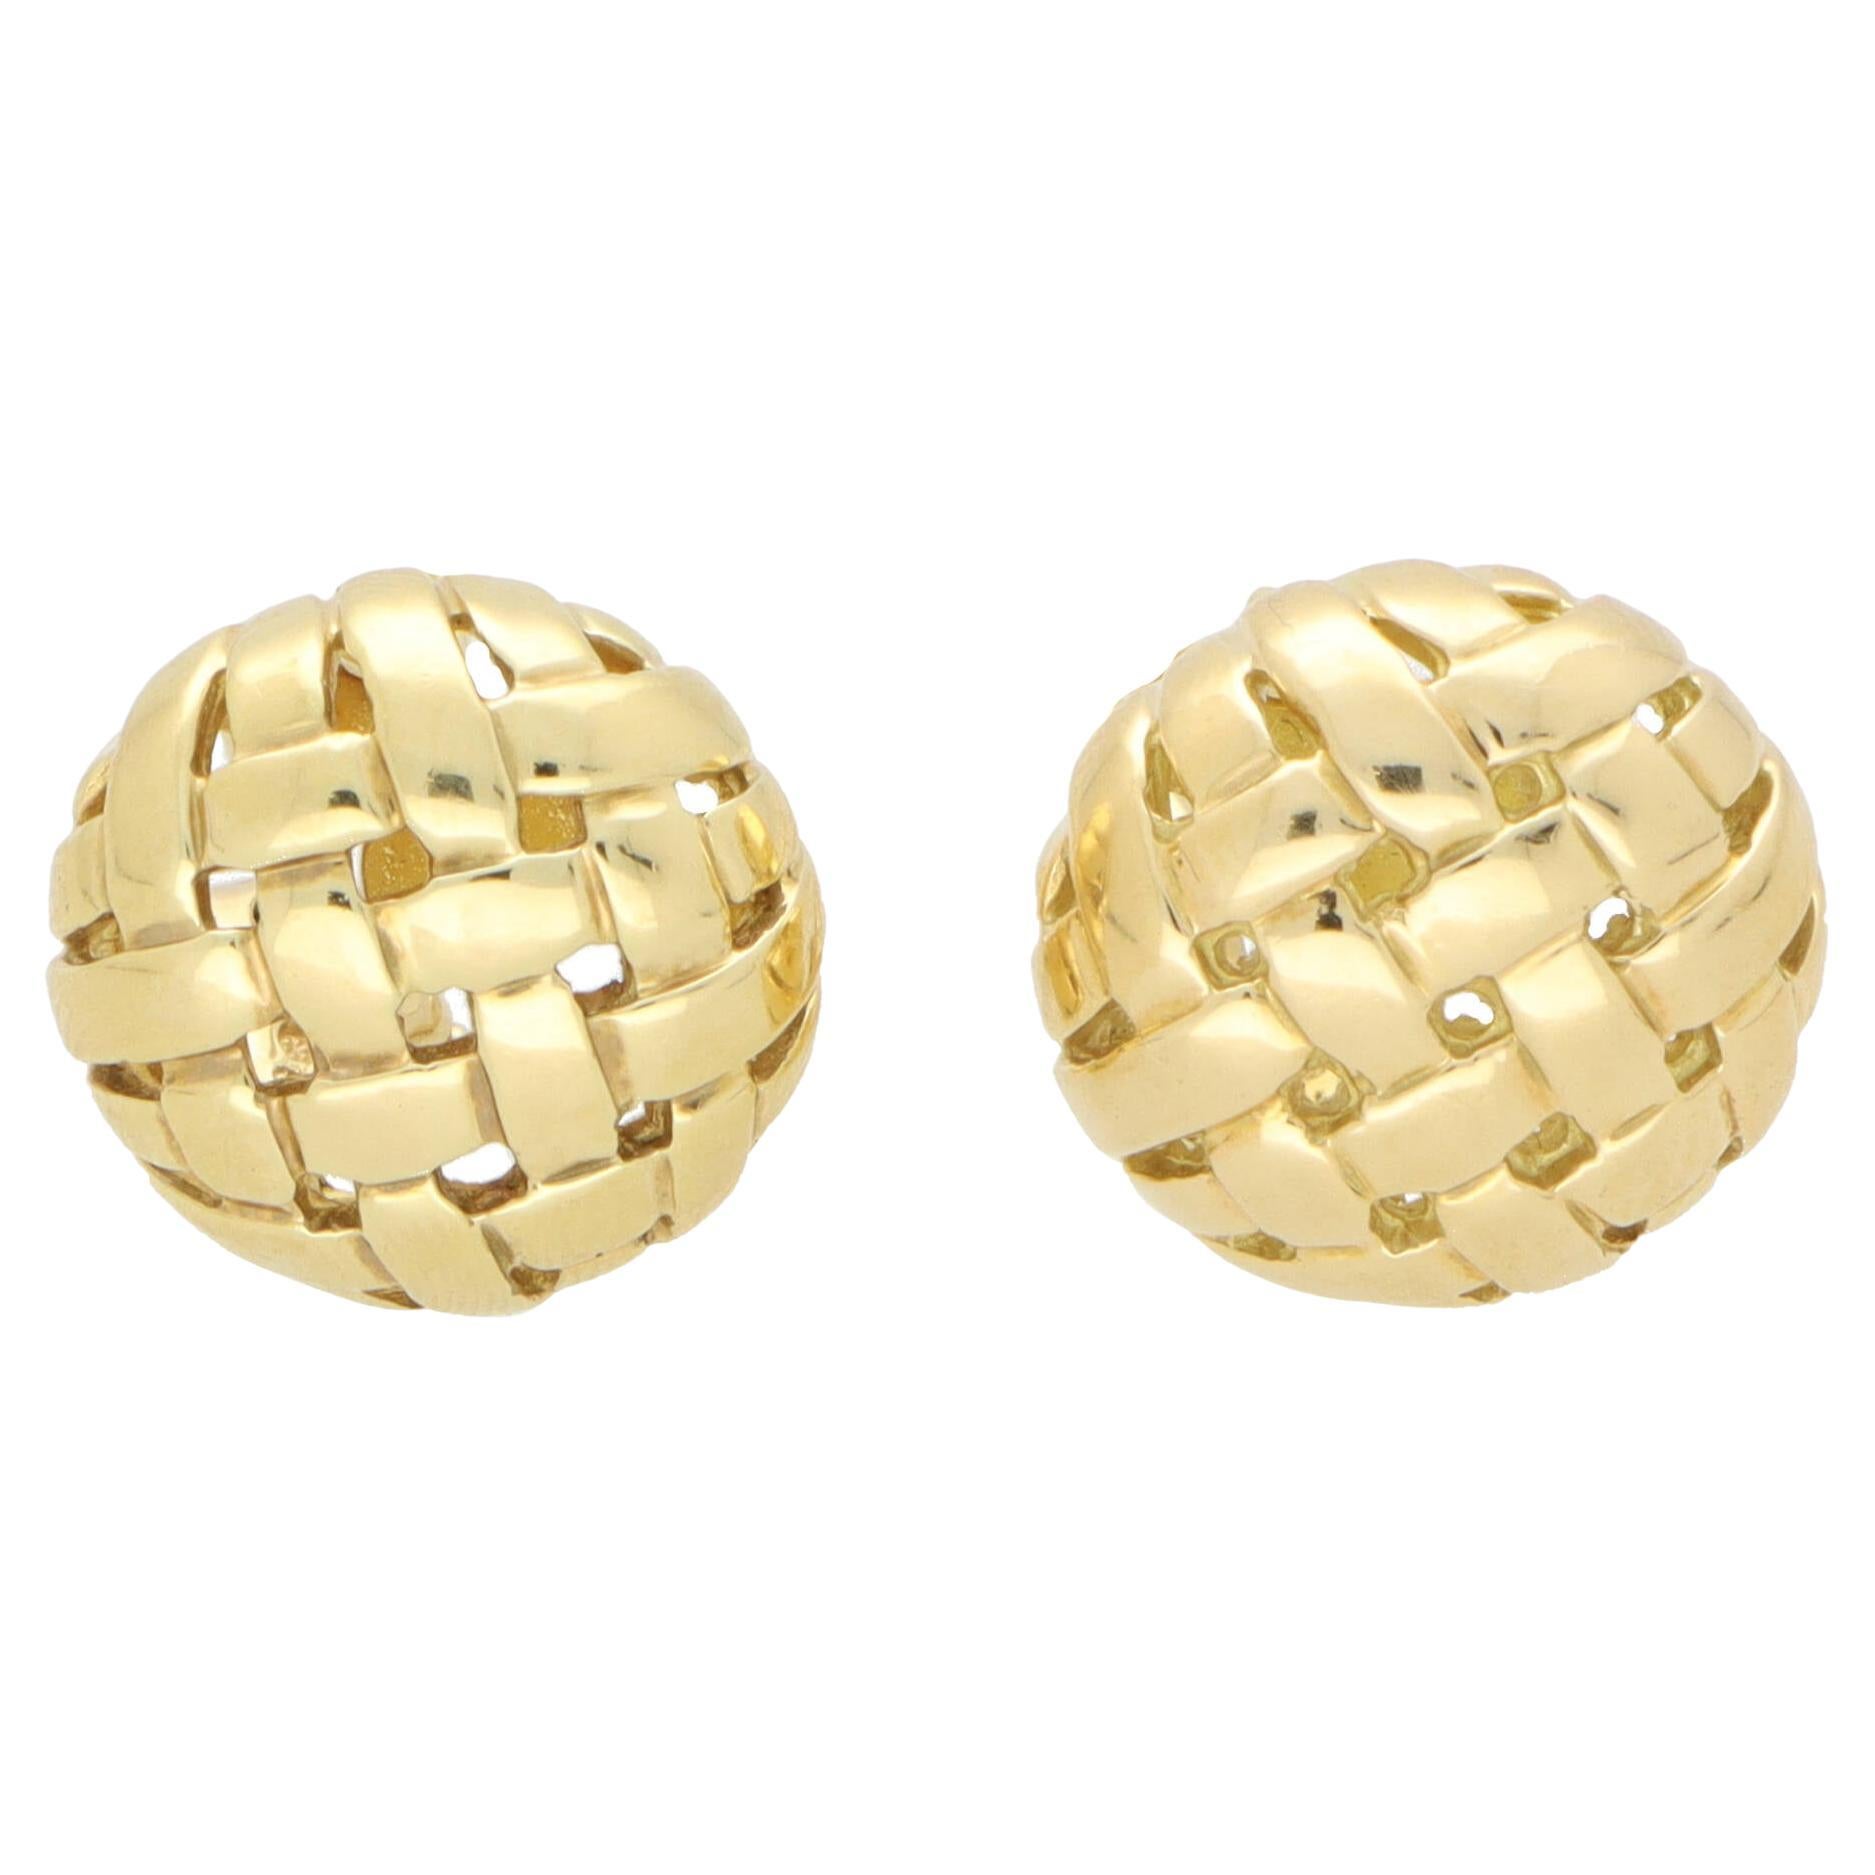 Vintage Tiffany & Co Weaved Basket Earrings in 18k Yellow Gold